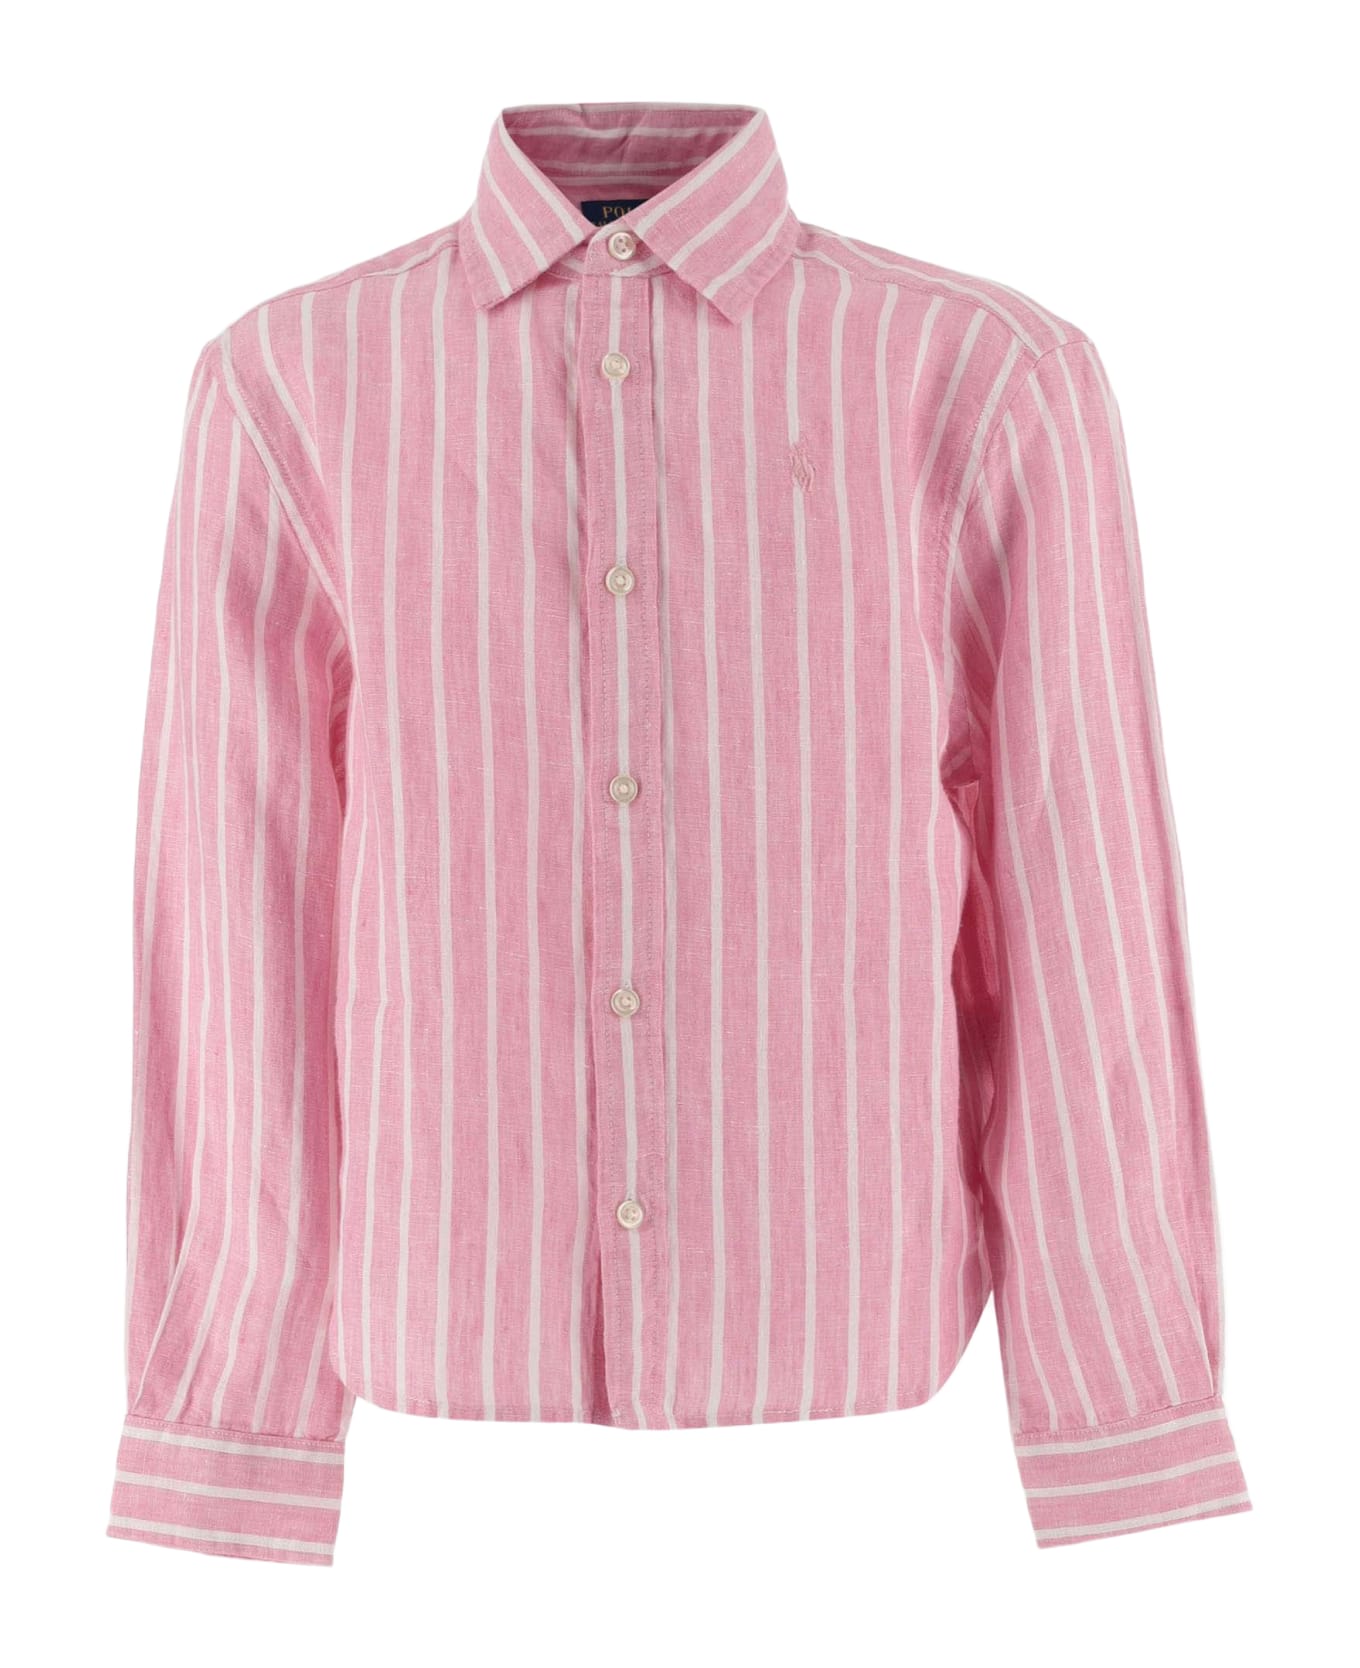 Ralph Lauren Linen Striped Shirt With Logo - PINK シャツ